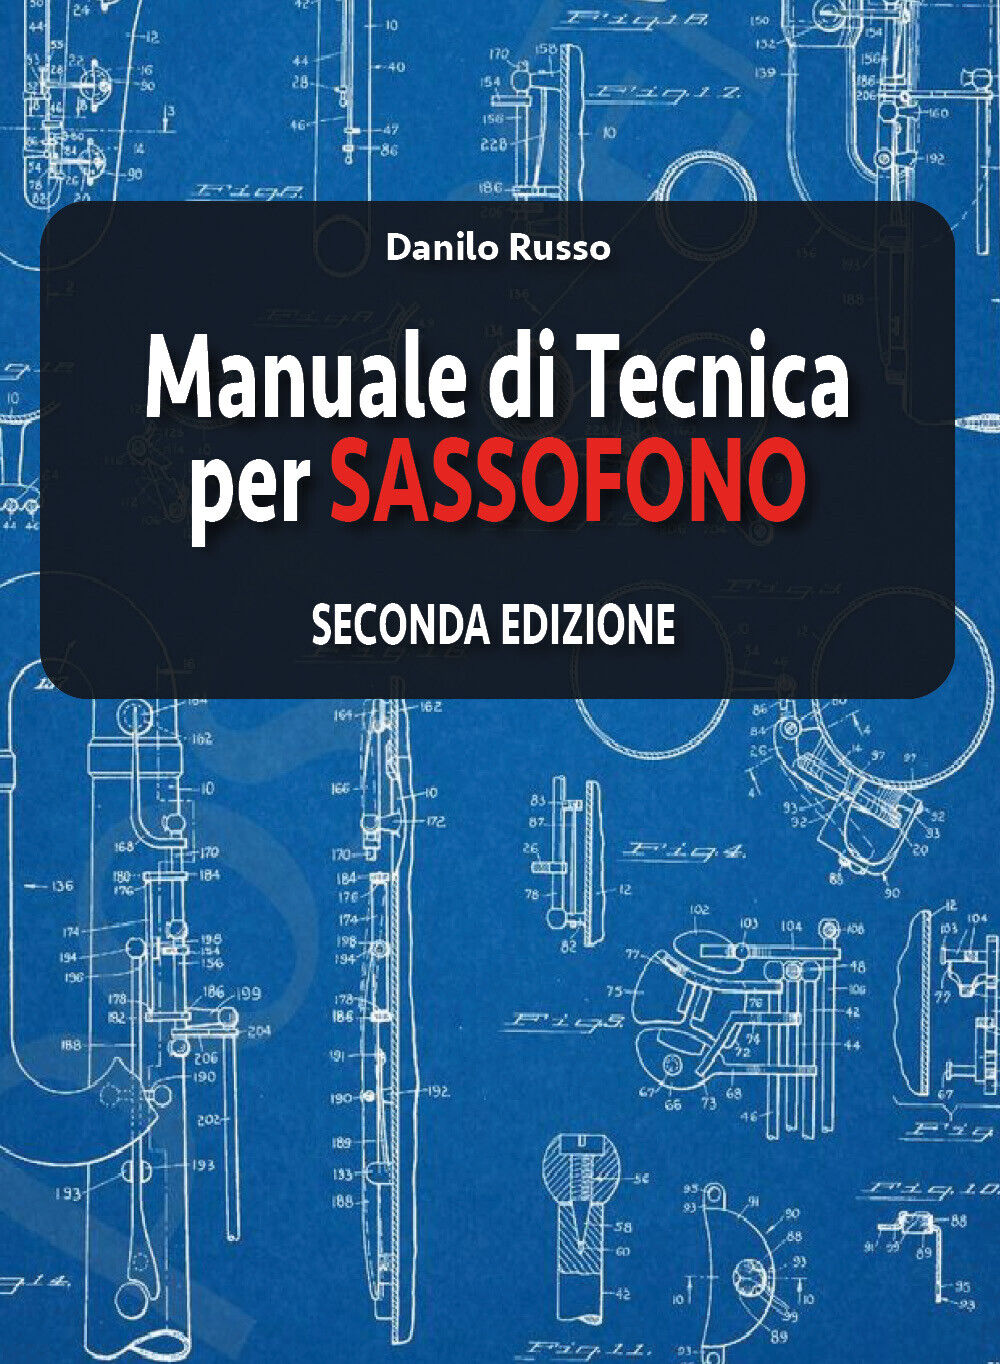 Manuale di tecnica per sassofono Seconda edizione di Danilo Russo,  2019,  Youca